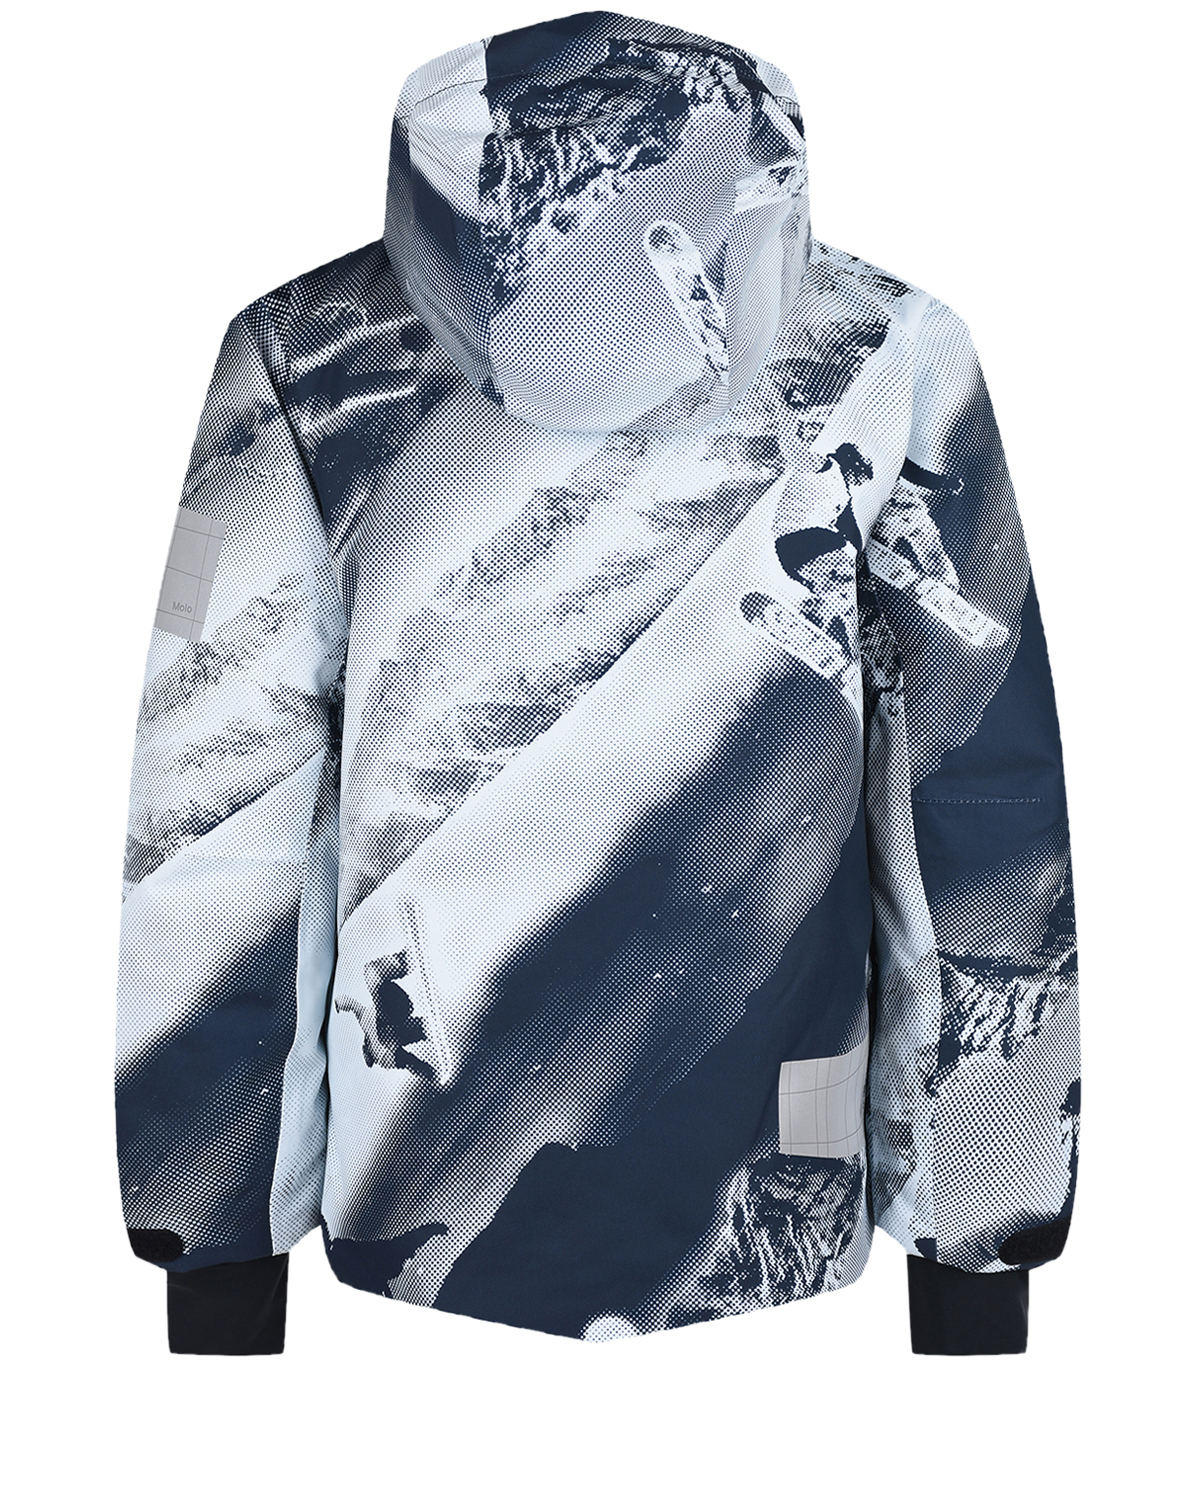 Комплект с принтом "лыжники" (куртка, брюки, подтяжки) Molo детский, размер 140, цвет нет цвета Комплект с принтом "лыжники" (куртка, брюки, подтяжки) Molo детский - фото 3